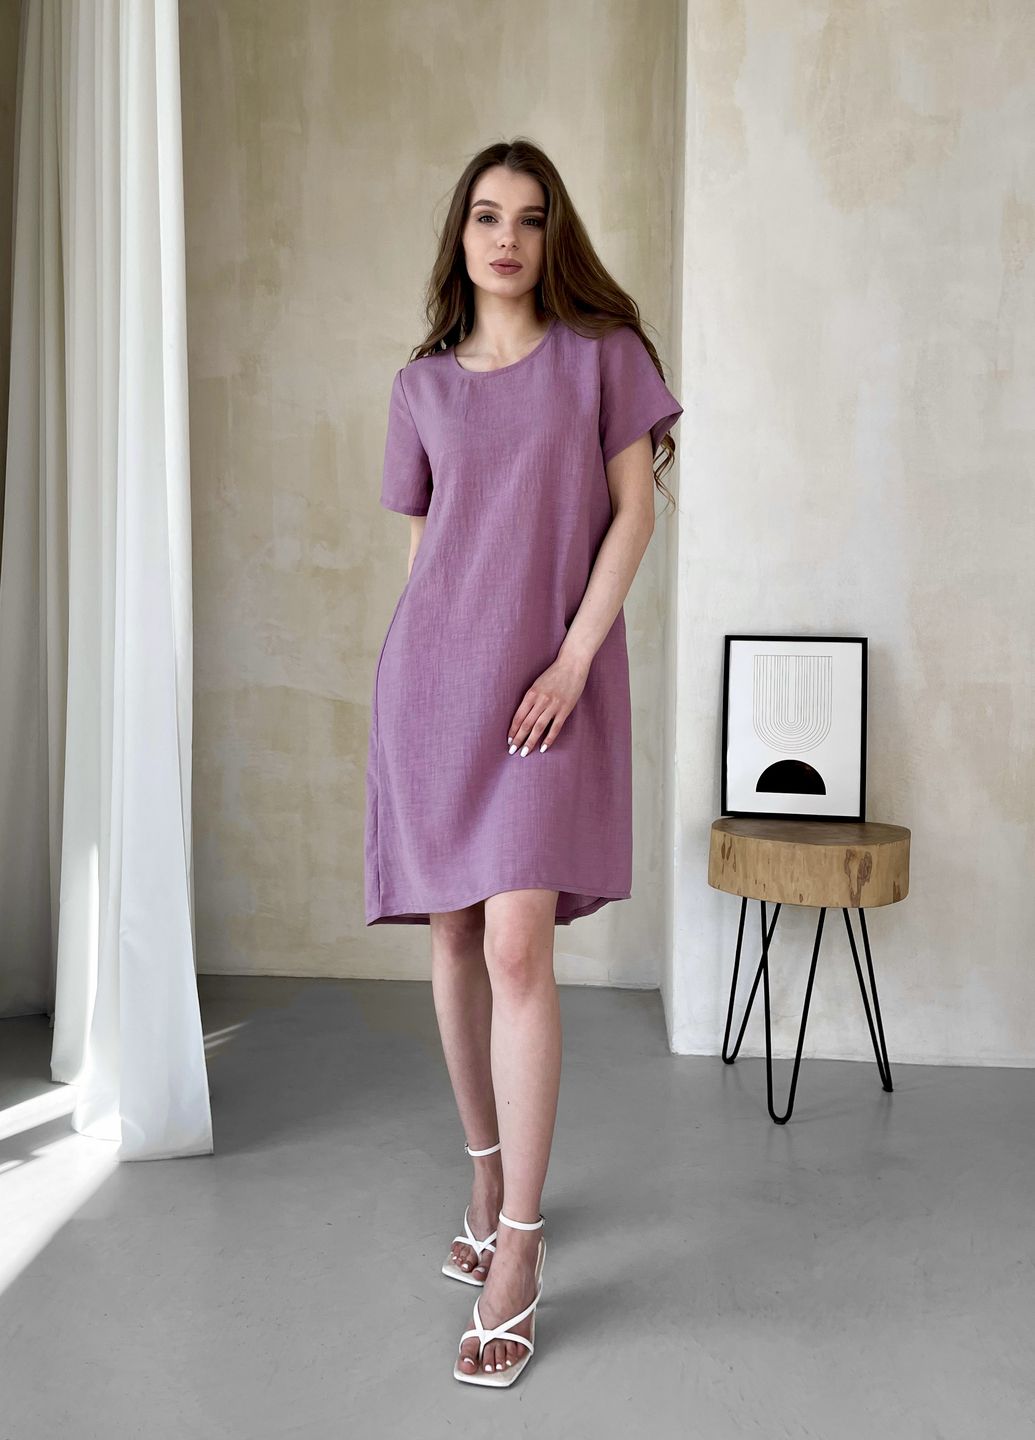 Купить Женское платье до колена однотонное с коротким рукавом из льна розовое Merlini Престо 700000182, размер 42-44 (S-M) в интернет-магазине